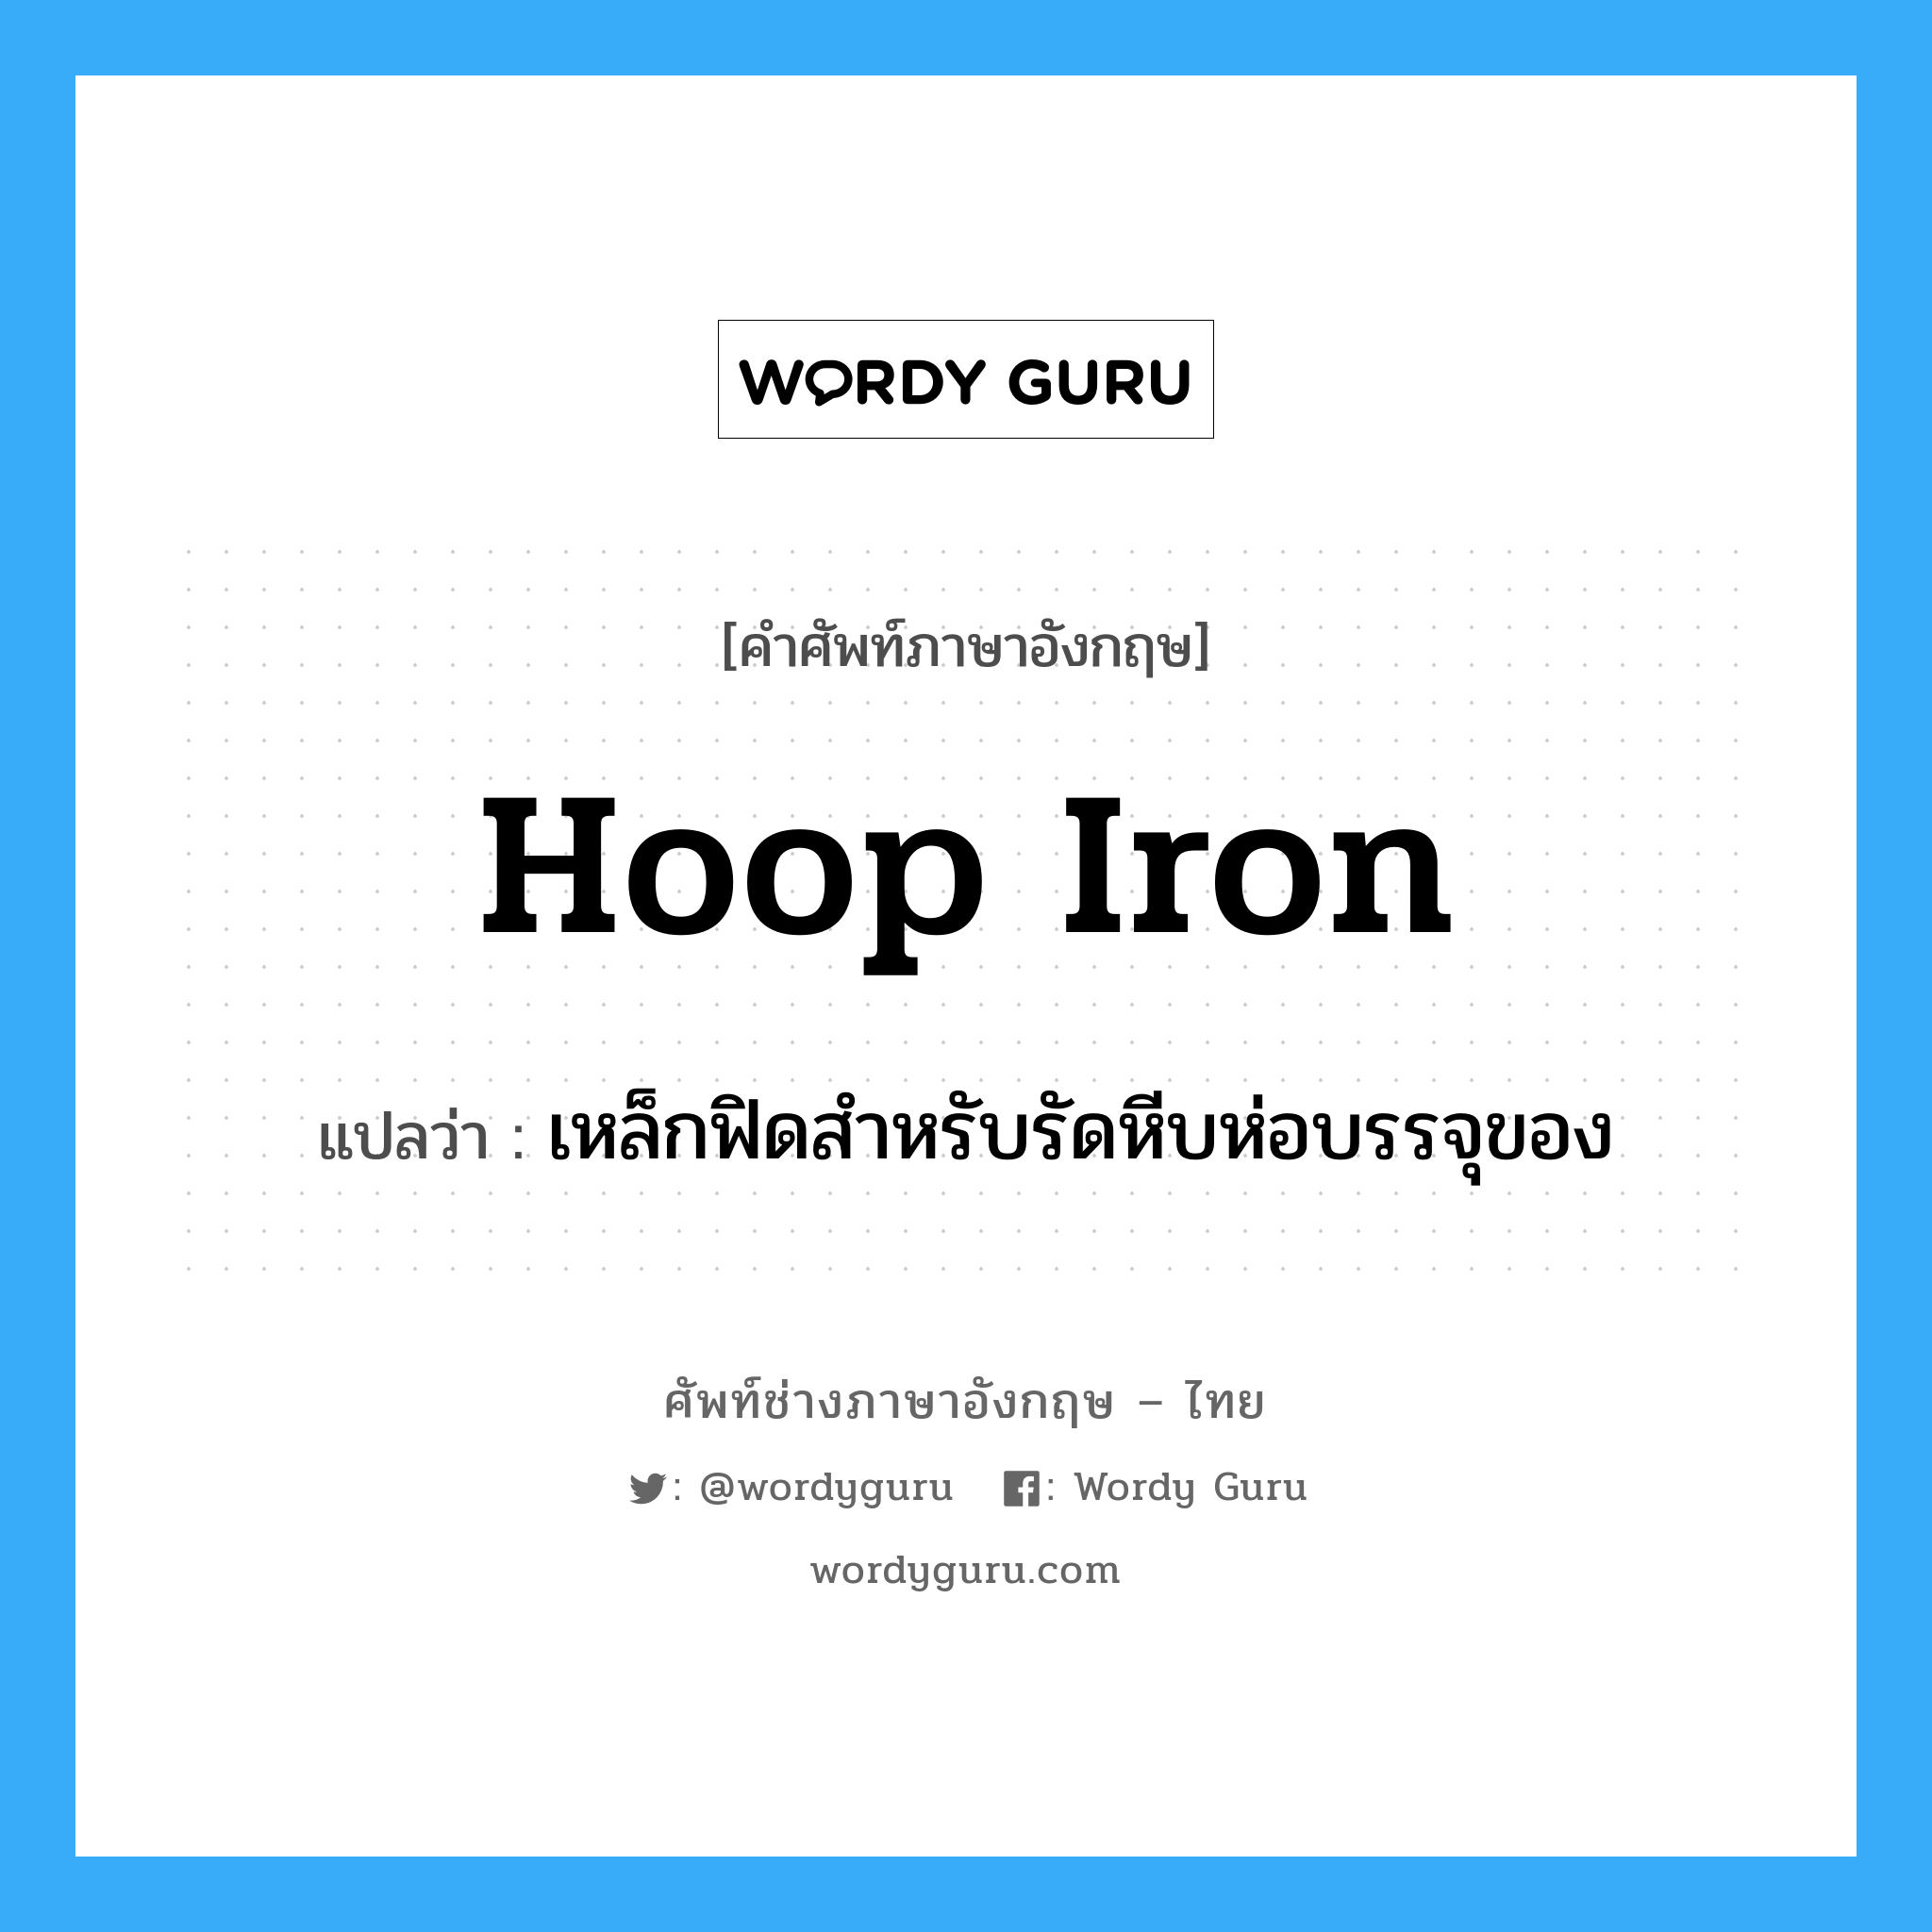 hoop iron แปลว่า?, คำศัพท์ช่างภาษาอังกฤษ - ไทย hoop iron คำศัพท์ภาษาอังกฤษ hoop iron แปลว่า เหล็กฟิดสำหรับรัดหีบห่อบรรจุของ